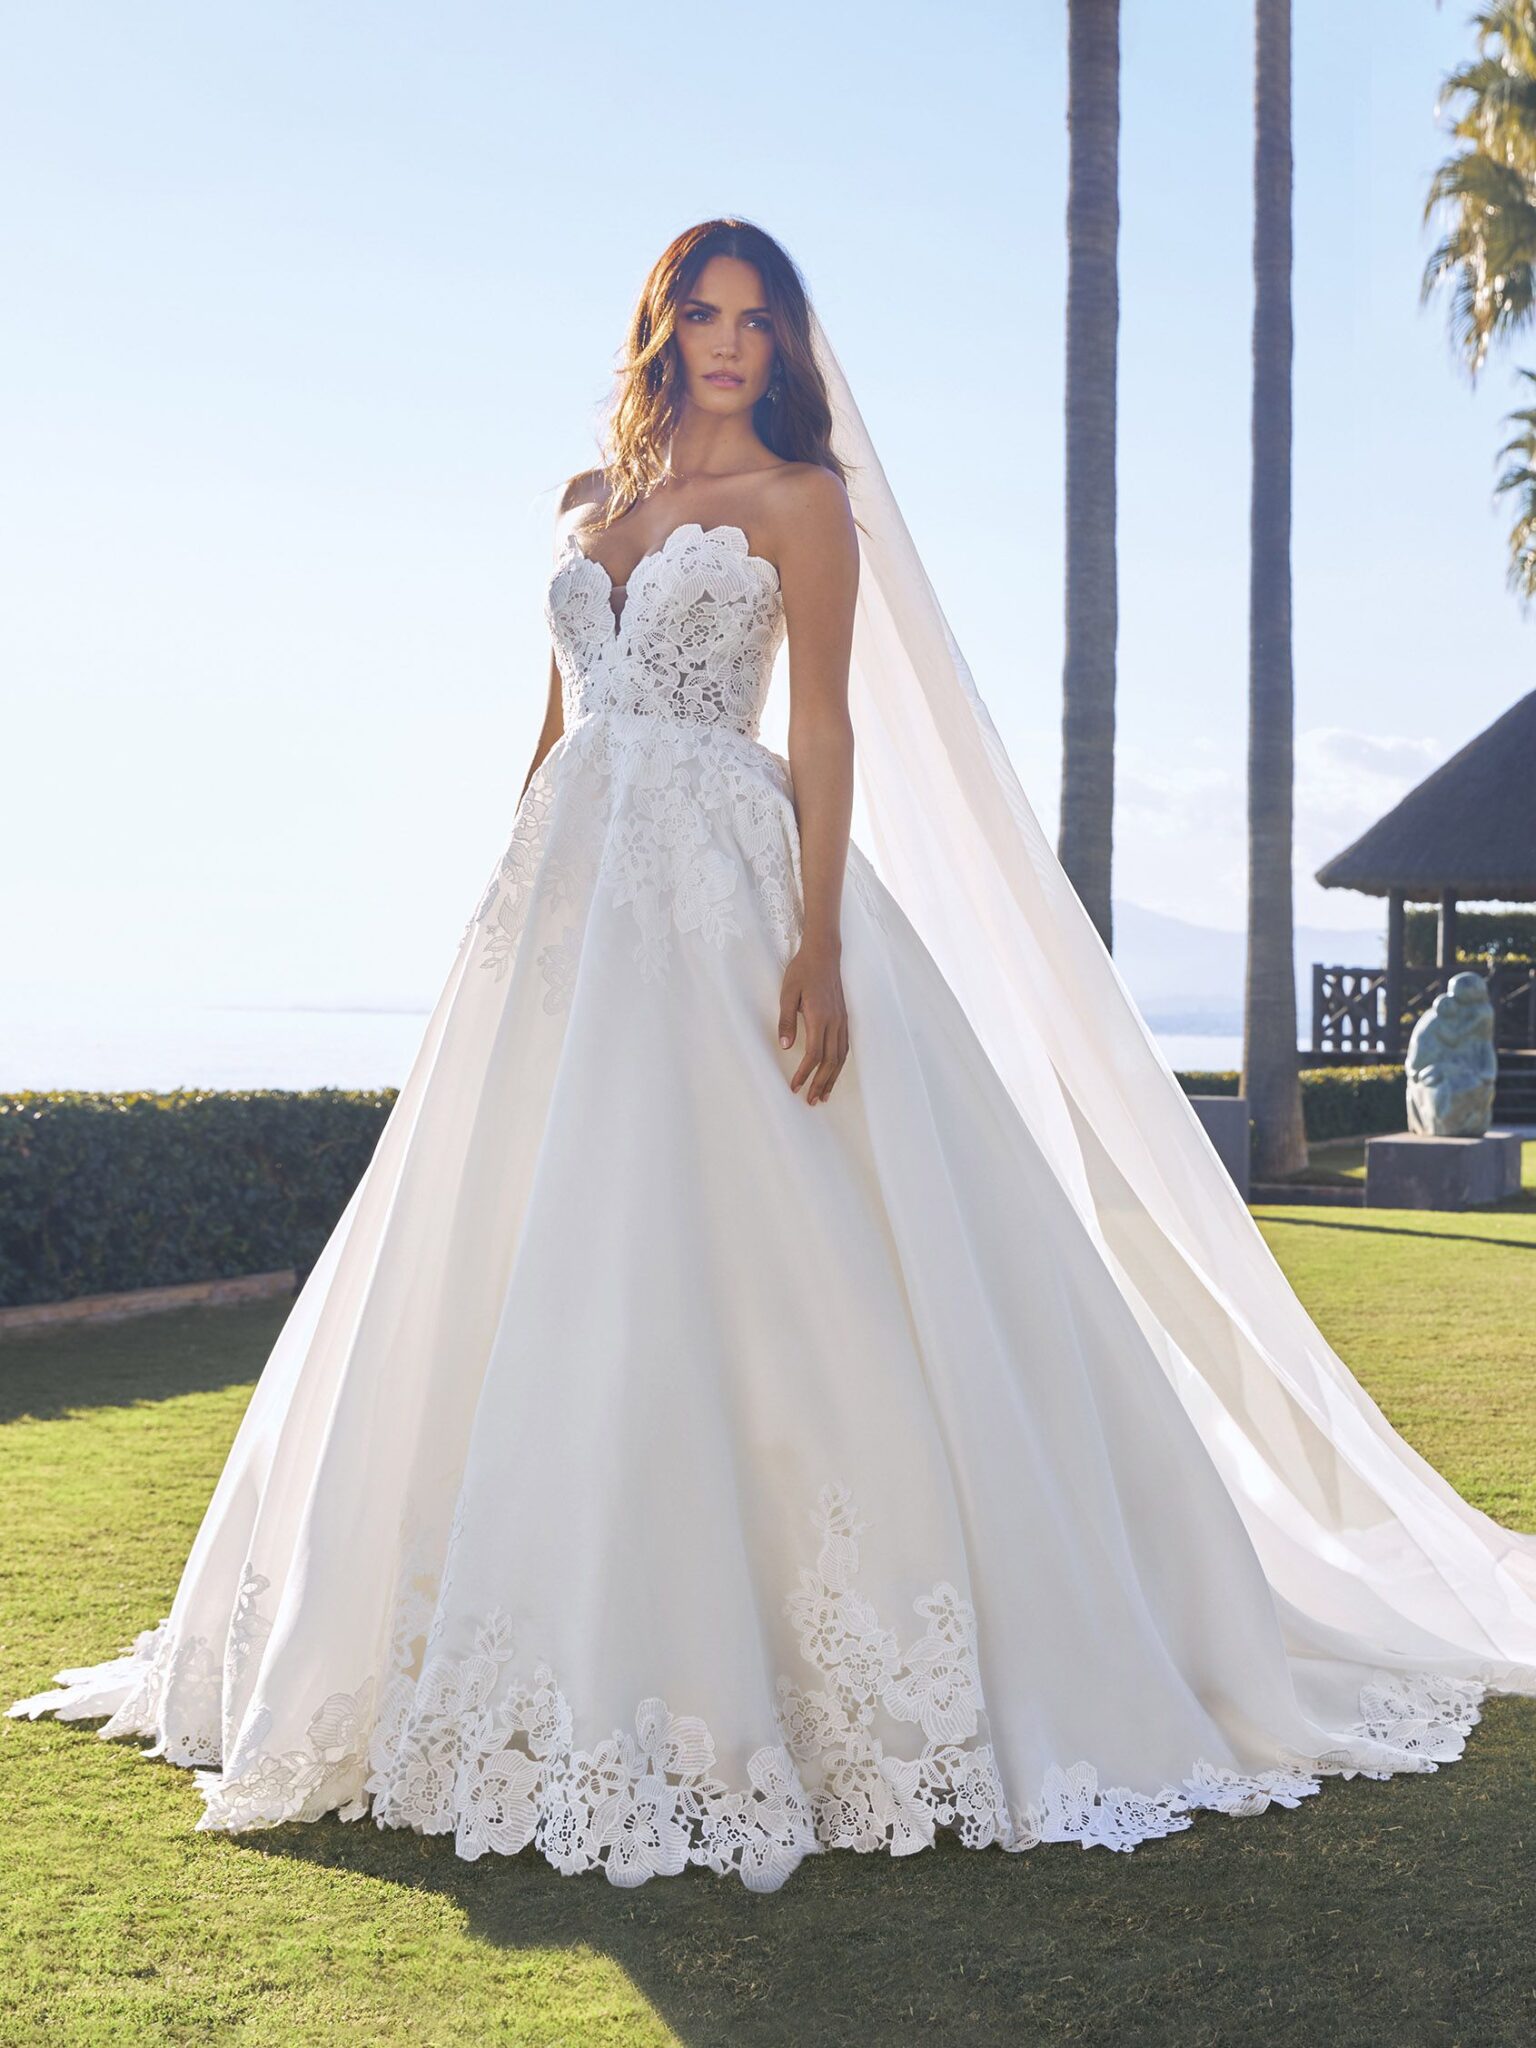 Off the Rack Designer Wedding Dresses - LBR Bridal